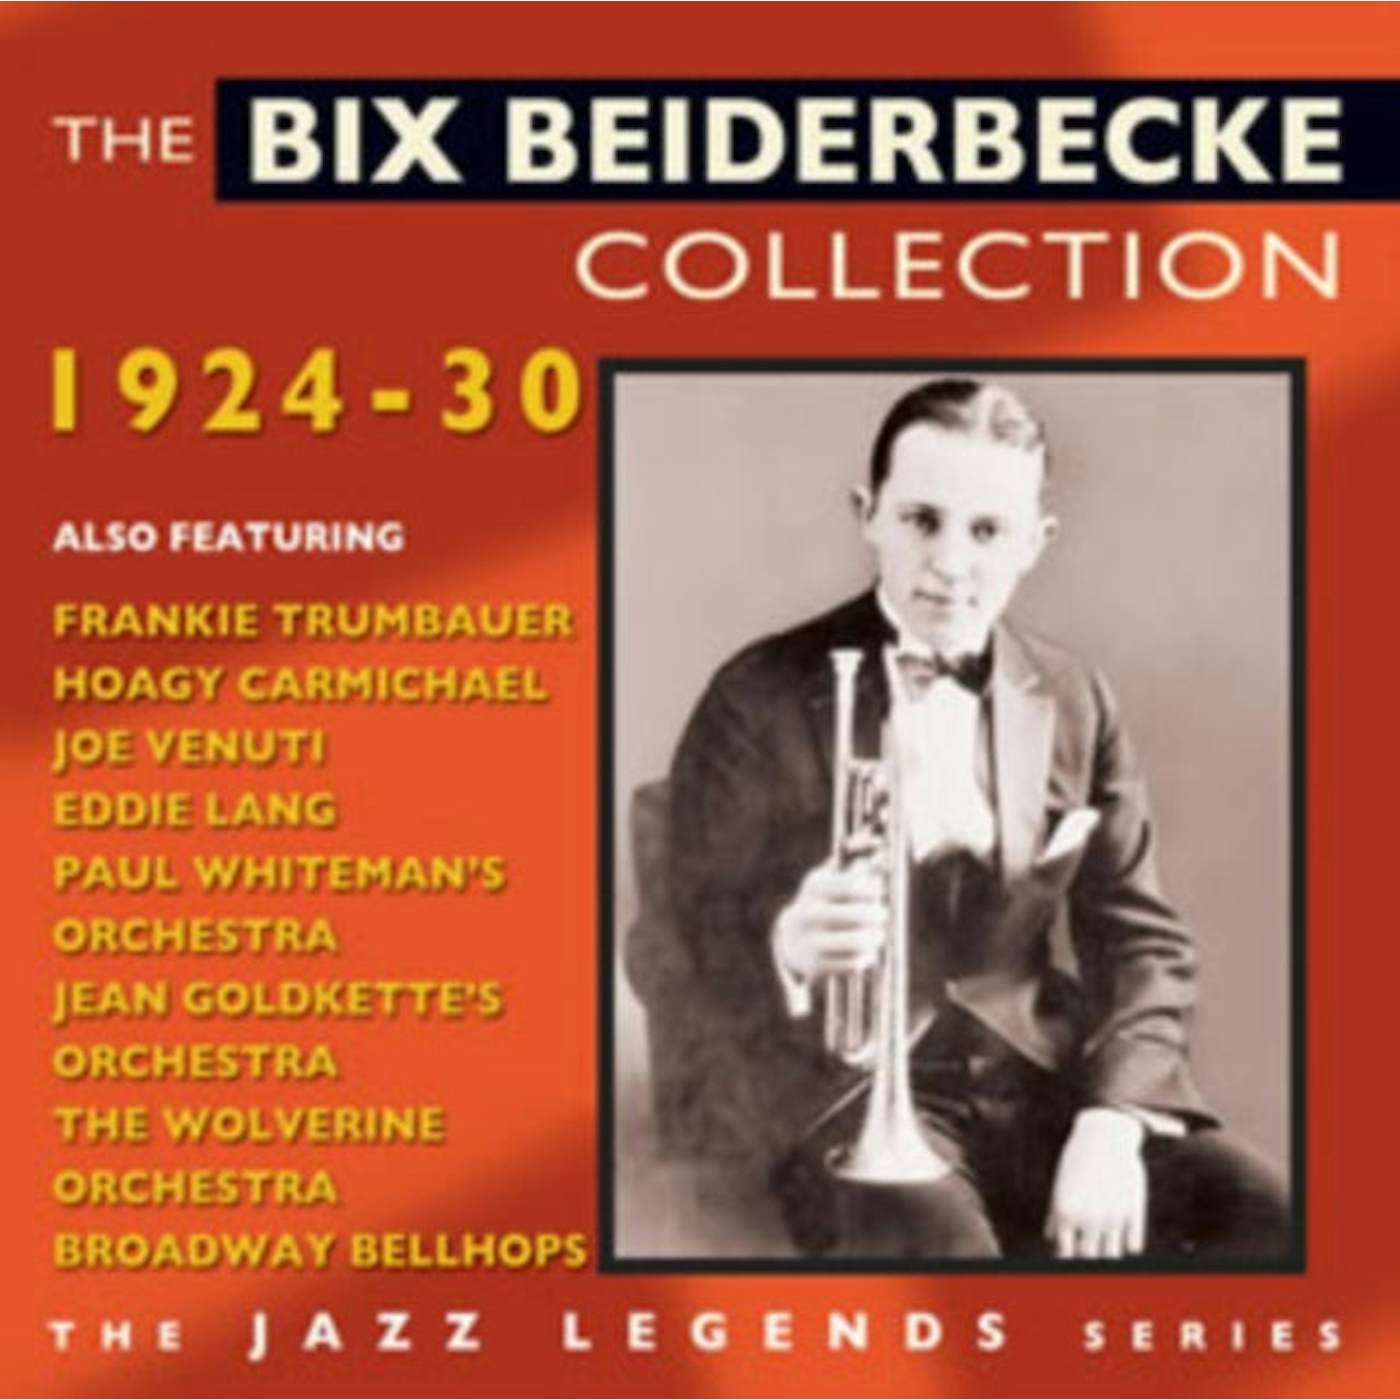 Bix Beiderbecke CD - The Bix Beiderbecke Collection 1924-1930